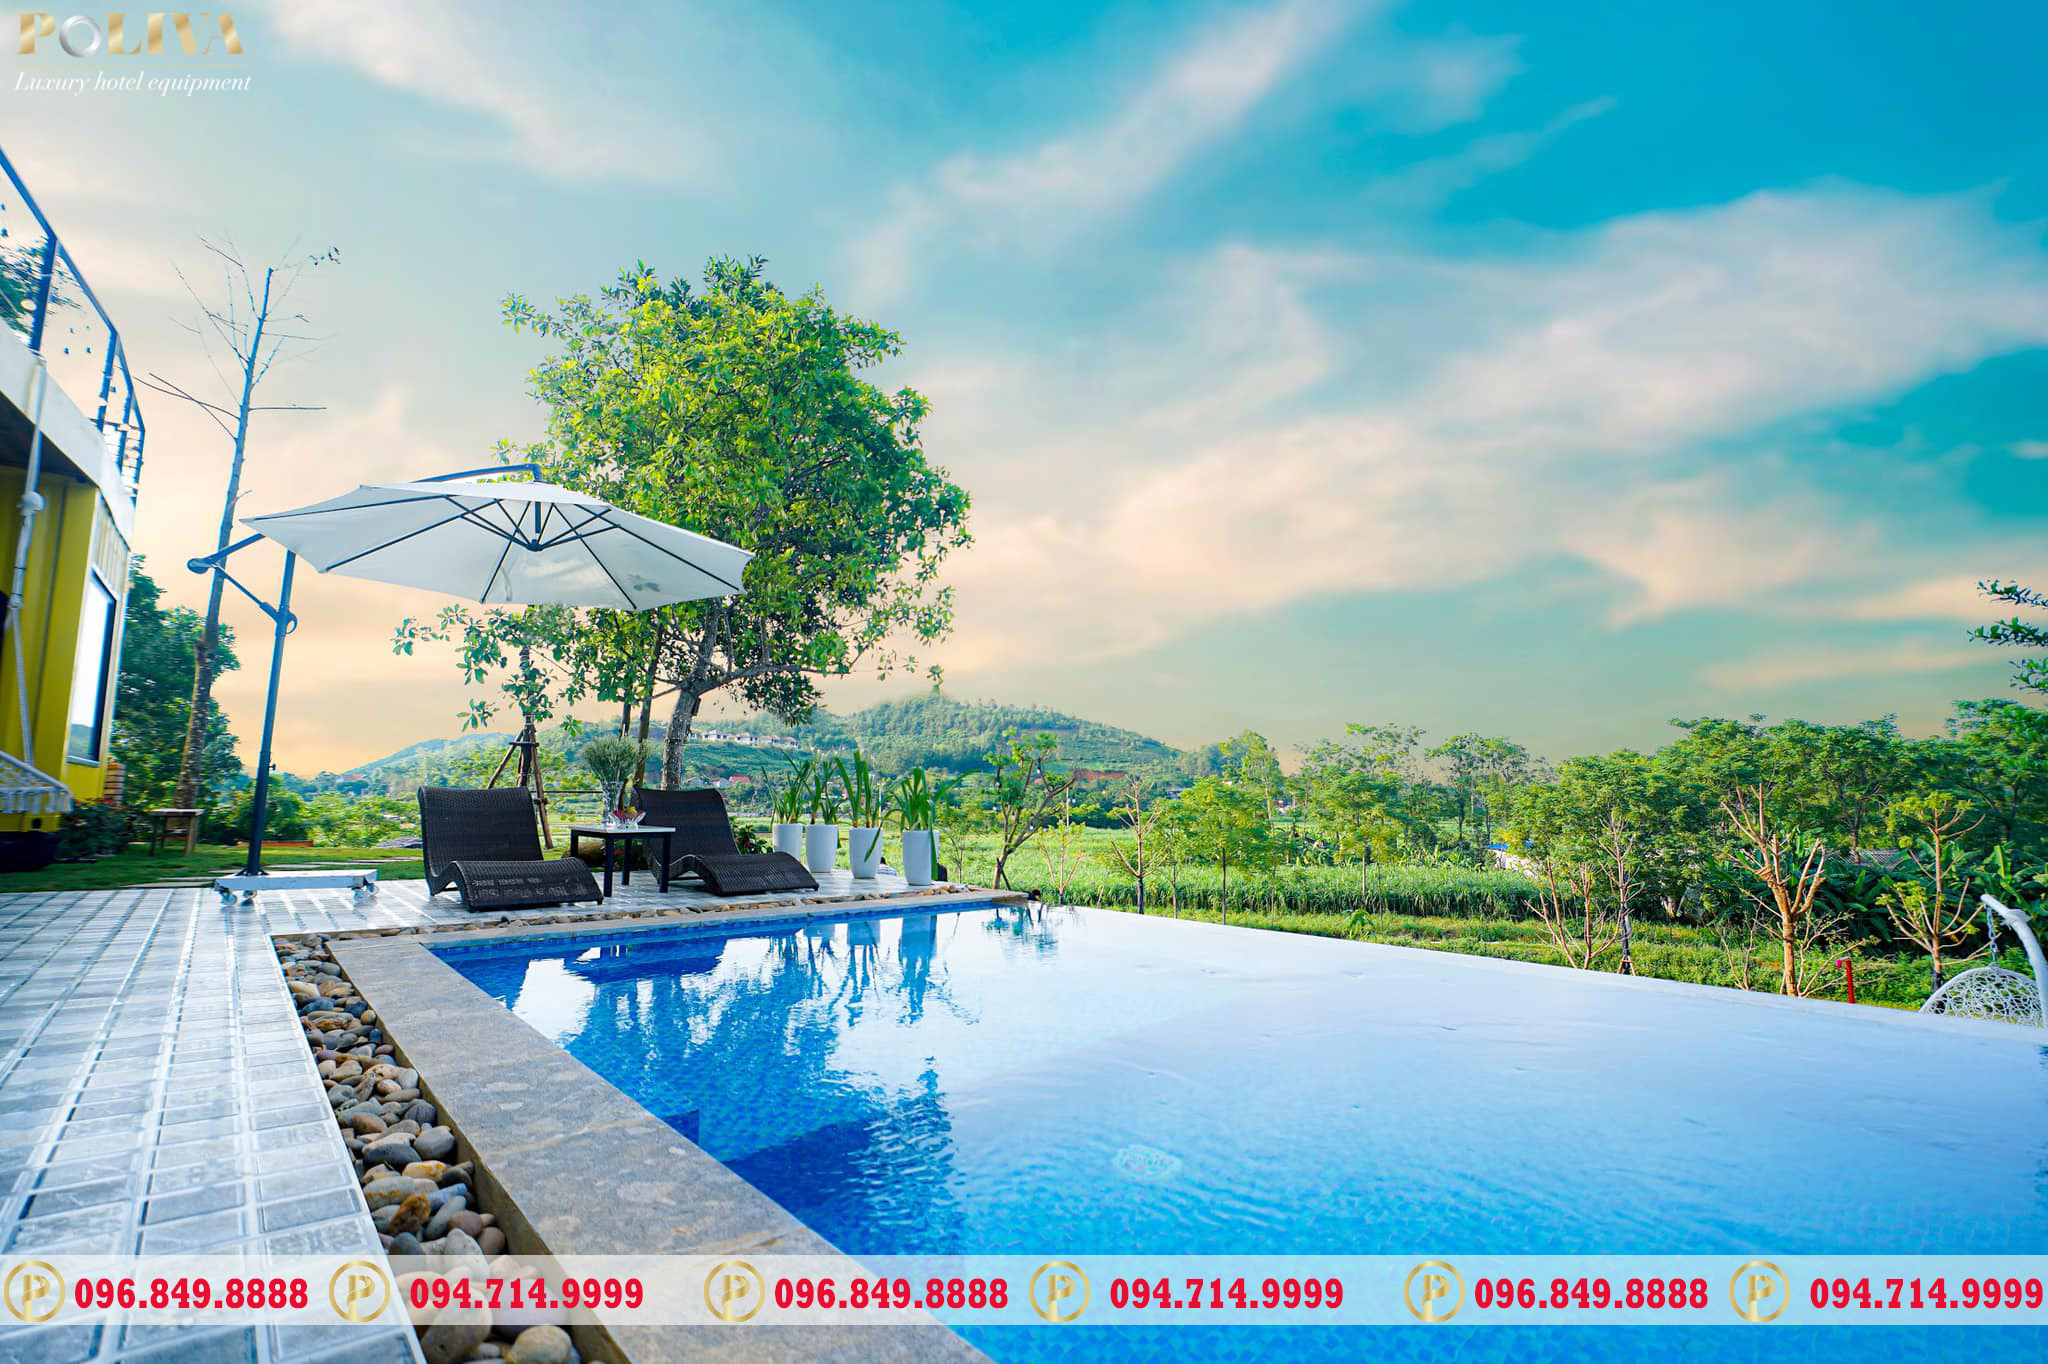 99 mẫu ô dù che nắng bể bơi đẹp giá rẻ nhất tại Việt Nam - Poliva.vn